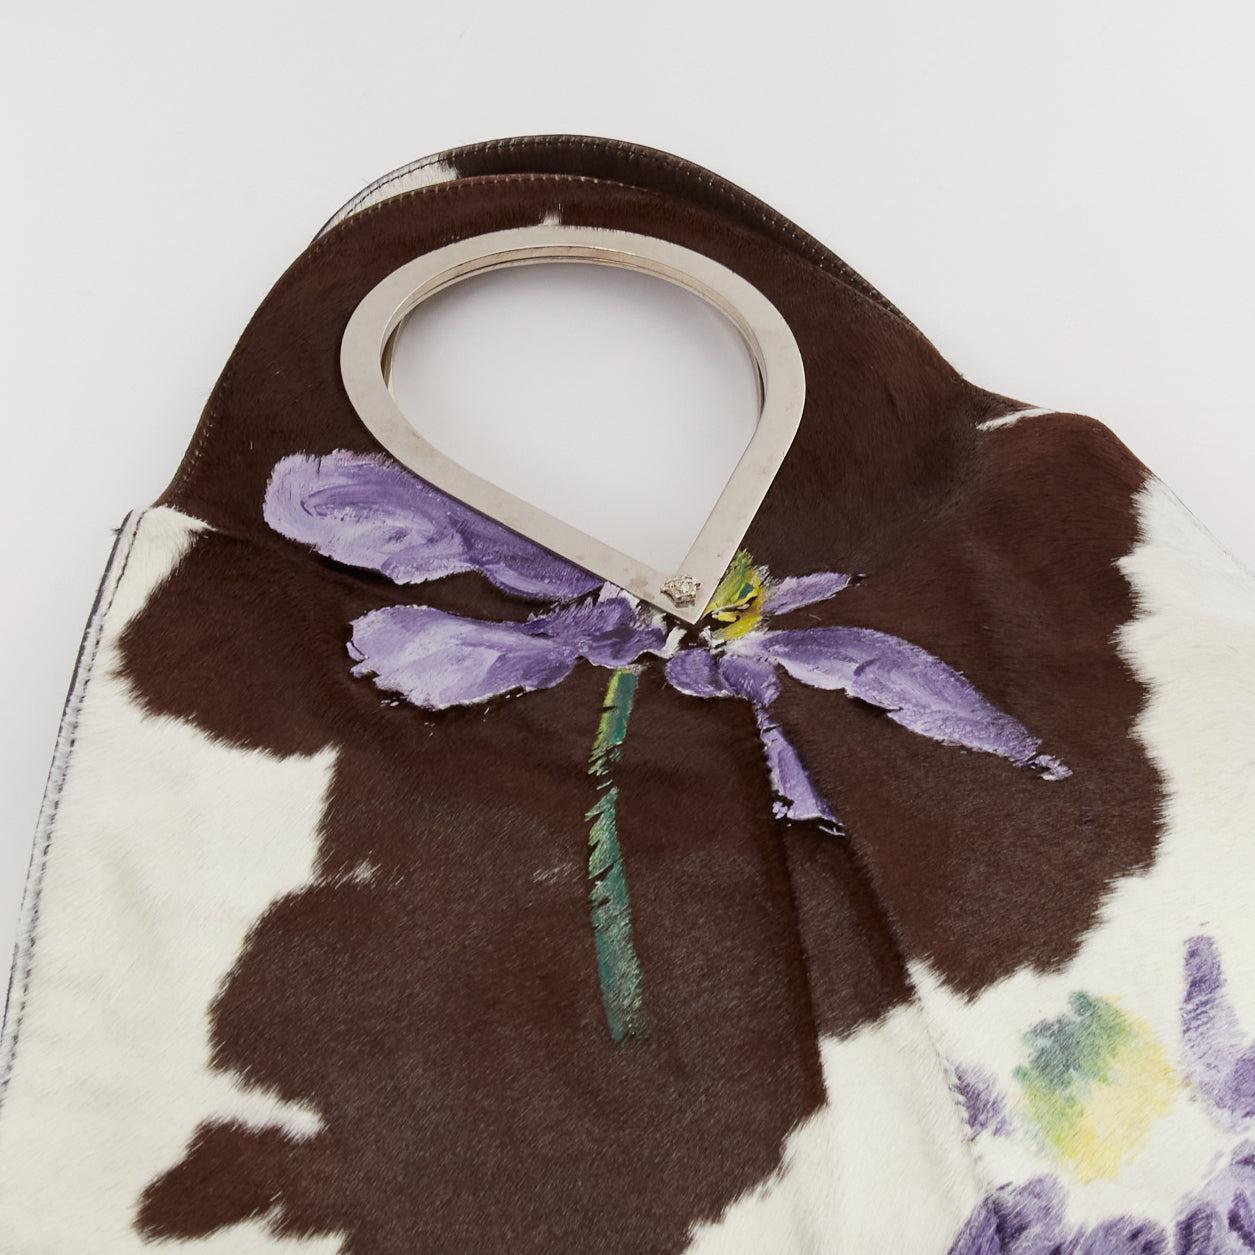 GIANNI VERSACE 1999 Runway handpainted floral brown cow print horsehair bag For Sale 2